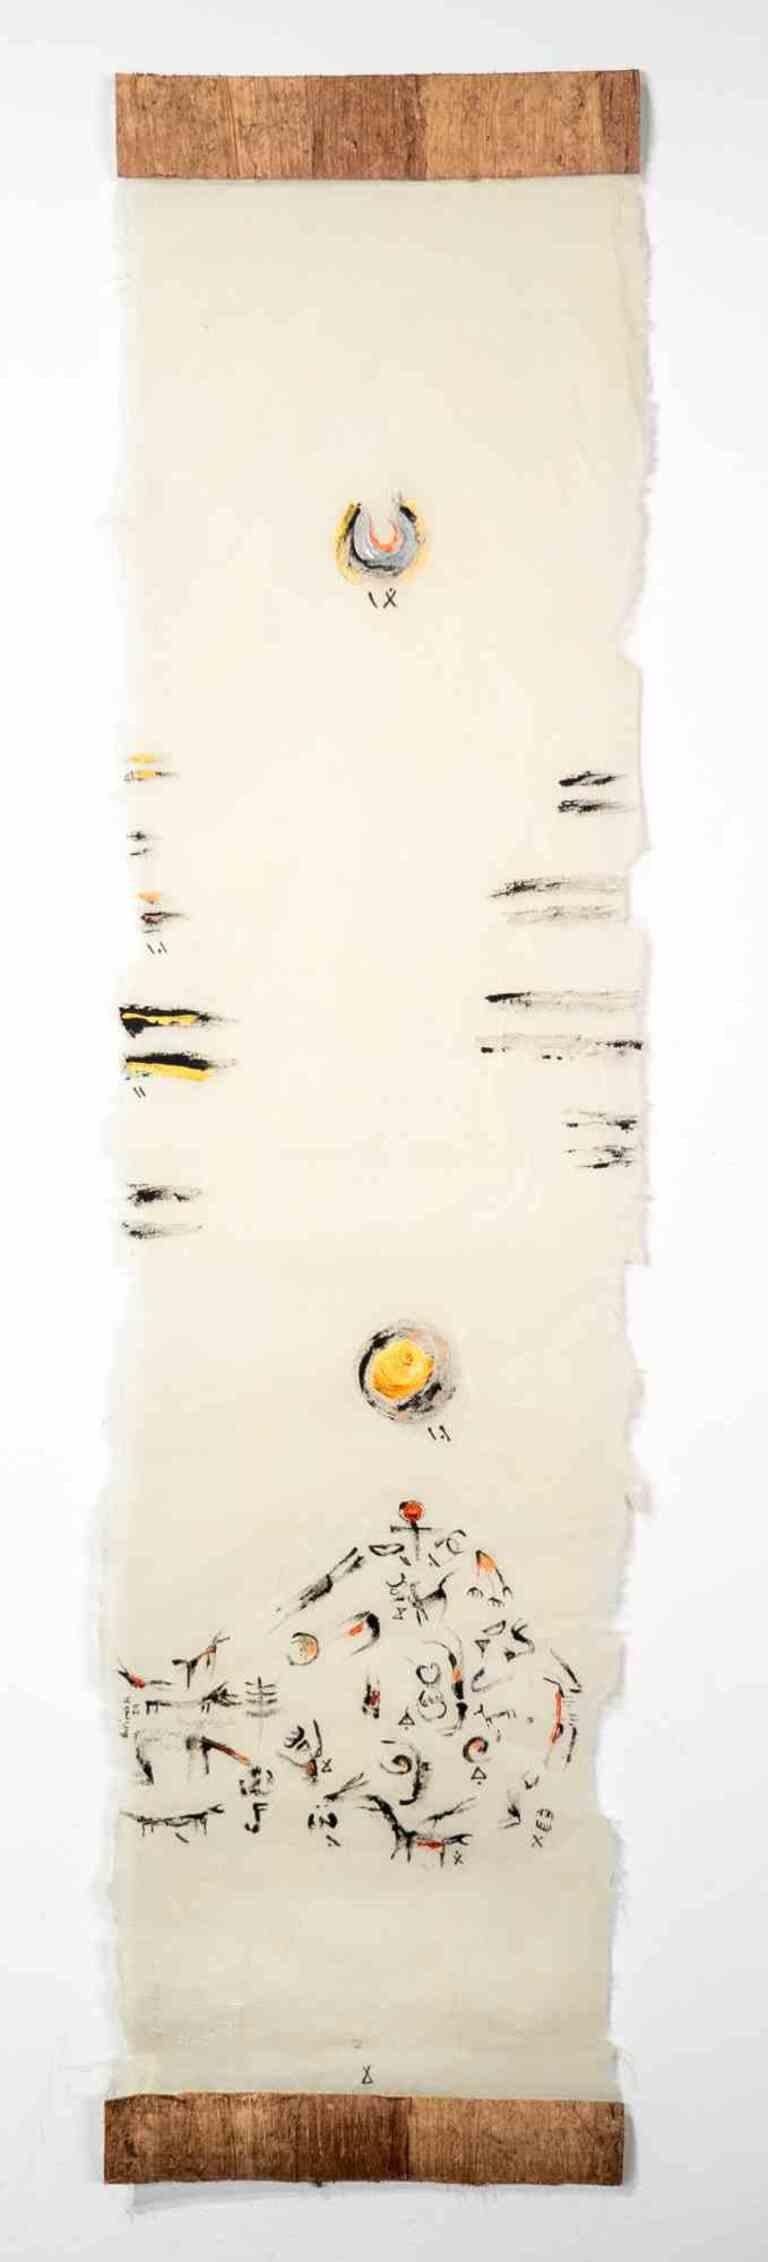 Sueño de Muertes y Vidas es un Dibujo realizado por la artista y Poeta iraní Parimah Avani en 2023.

Tinta china, acrílico sobre papel japonés Washi Haruki con Papiro aplicado, Plettenberg, DE.

Expuesta en "El viaje de la heroína" 2023, en la Sala